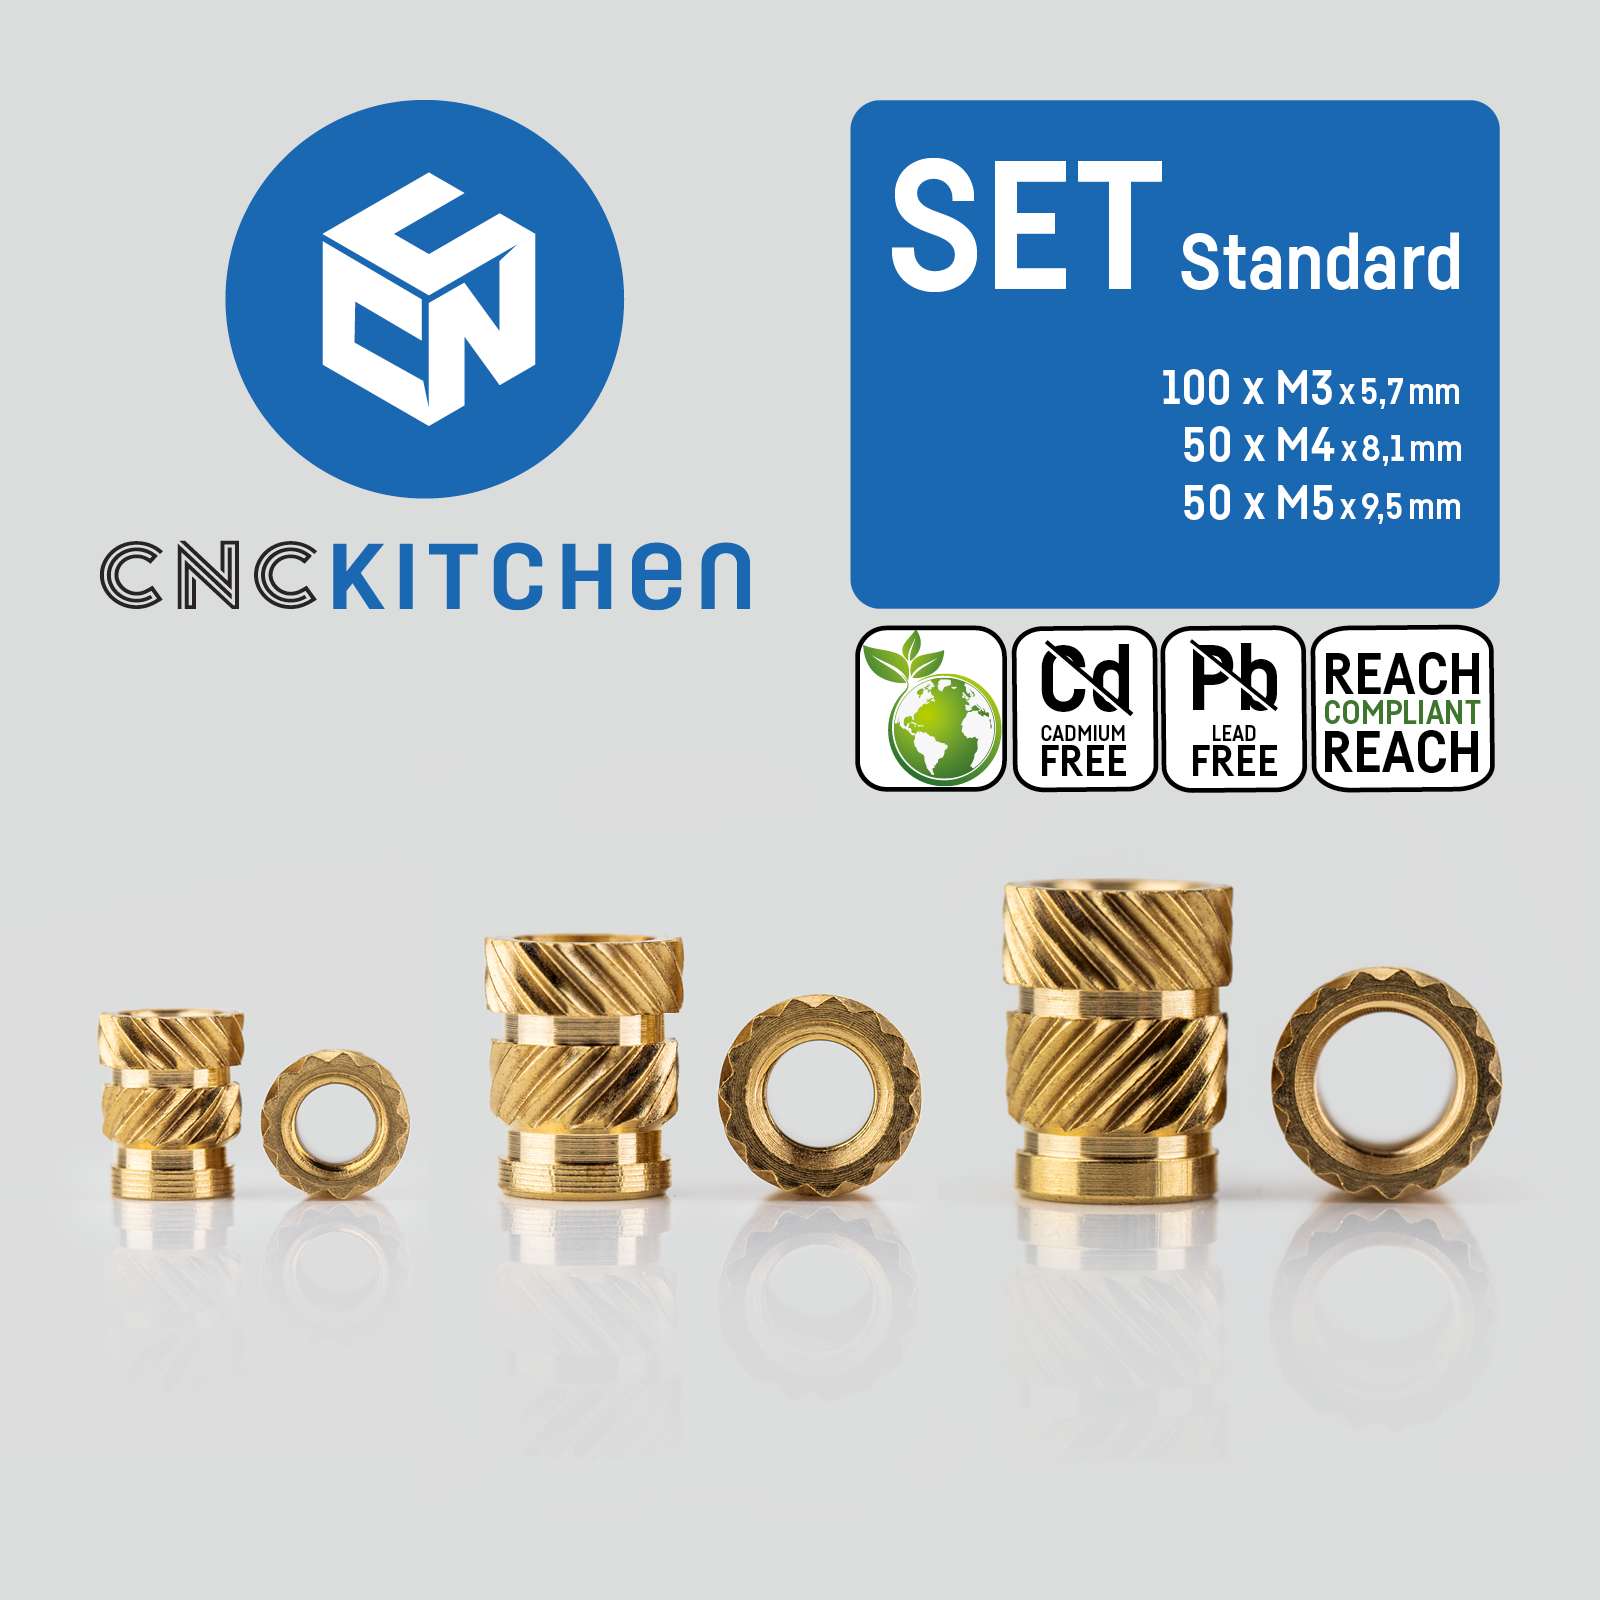 Original CNC Kitchen Gewindeeinsatz / threaded insert SET Standard 200 Stk  / pcs – CNCKitchen